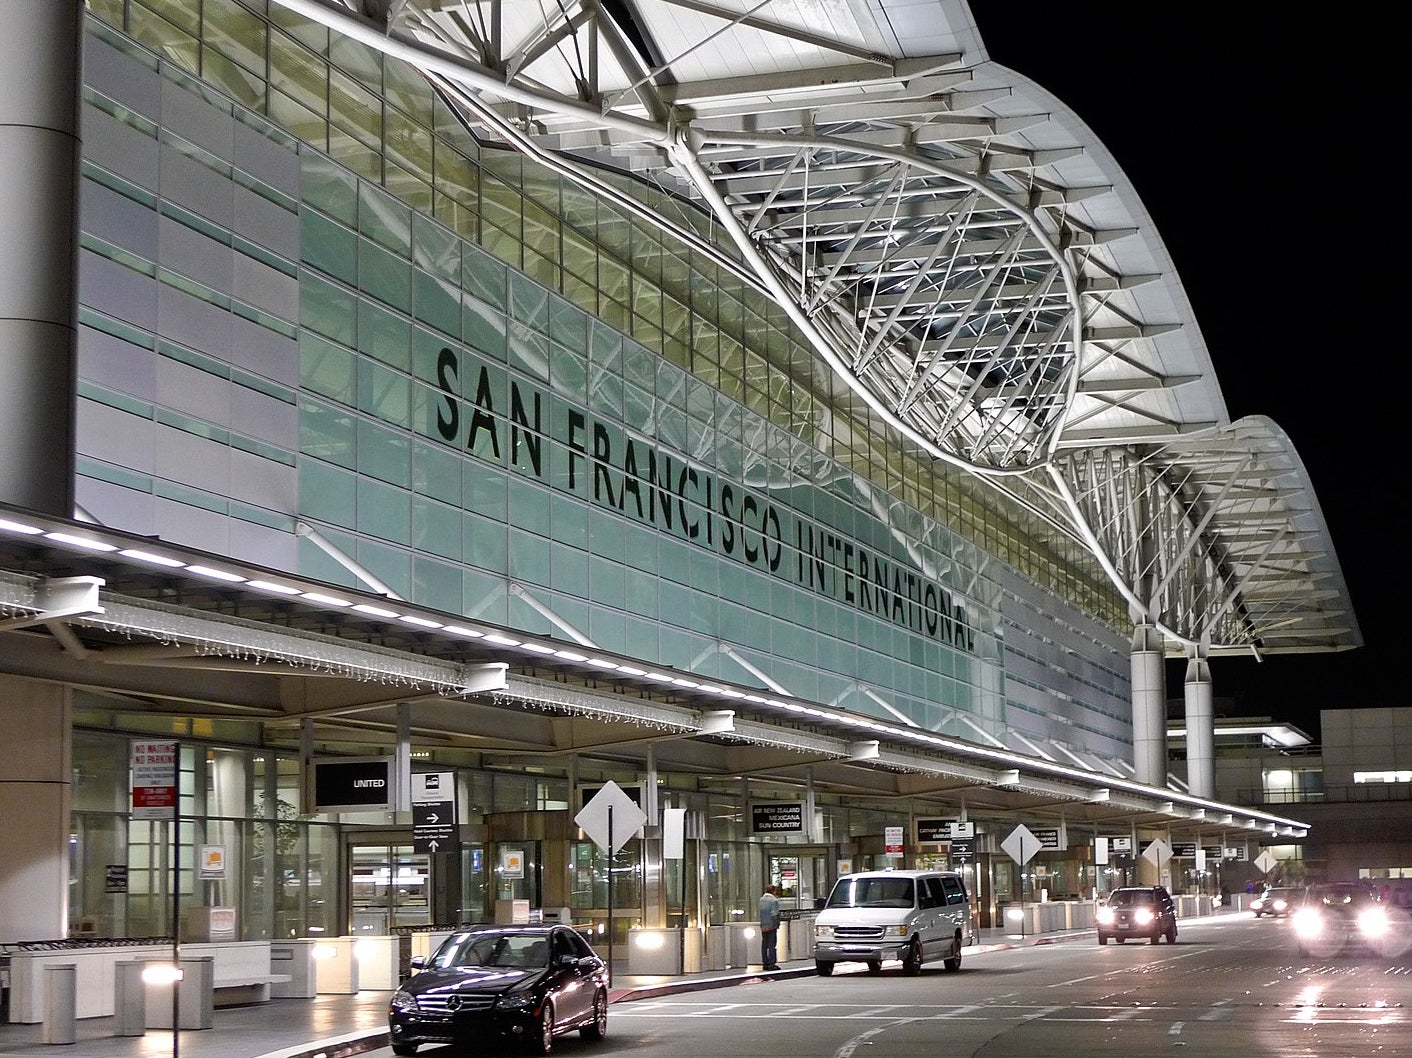 The International Terminal at San Francisco Airport